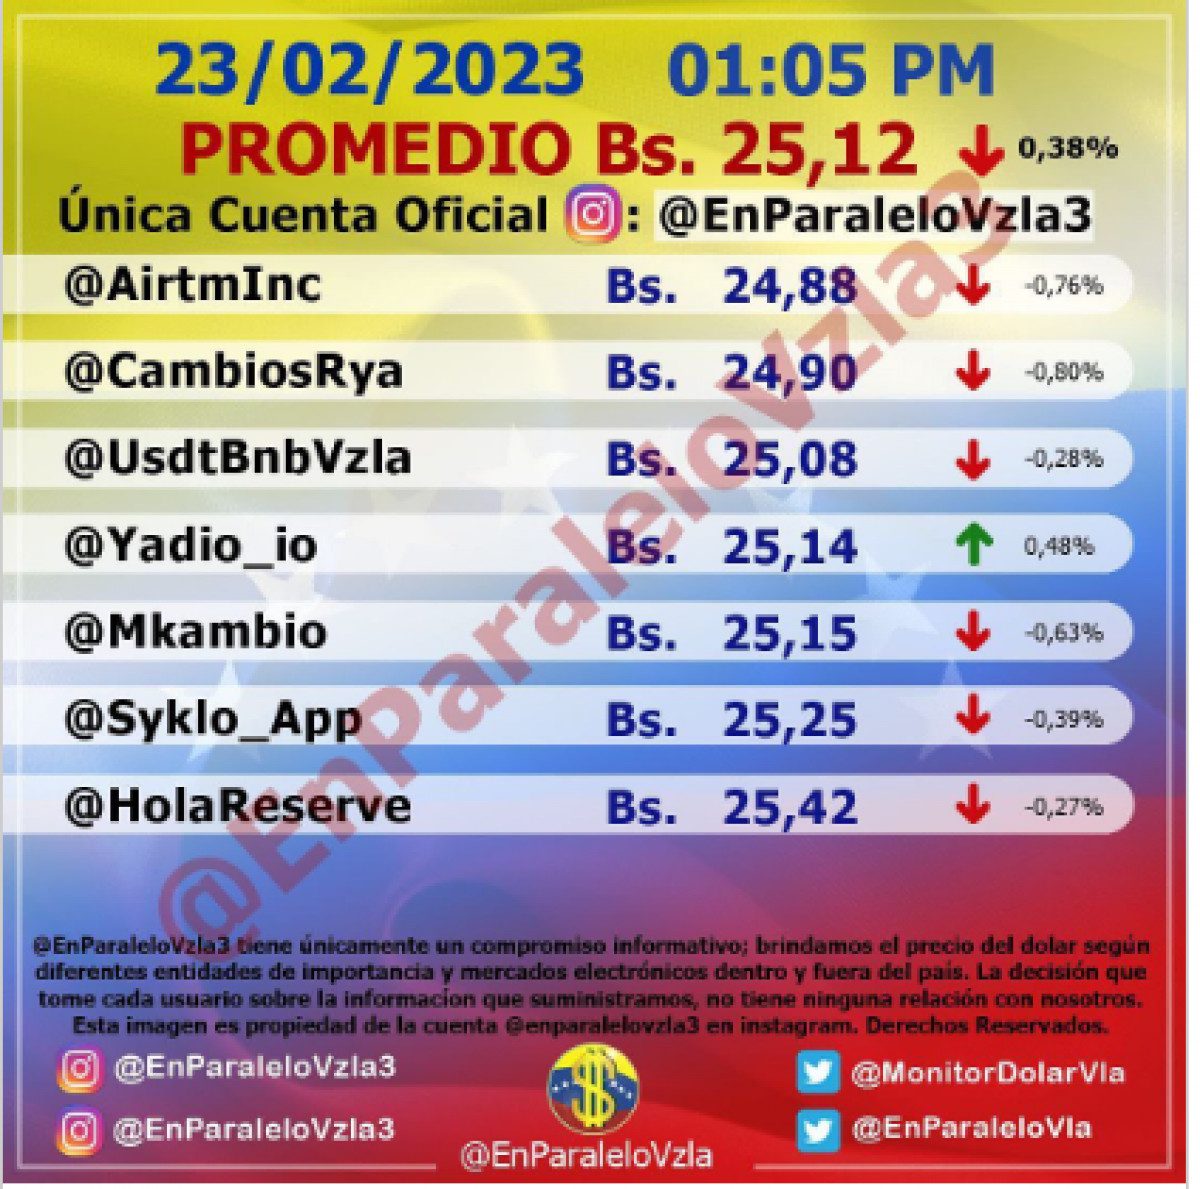 dolartoday en venezuela precio del dolar este jueves 23 de febrero de 2023 laverdaddemonagas.com en paralelo8